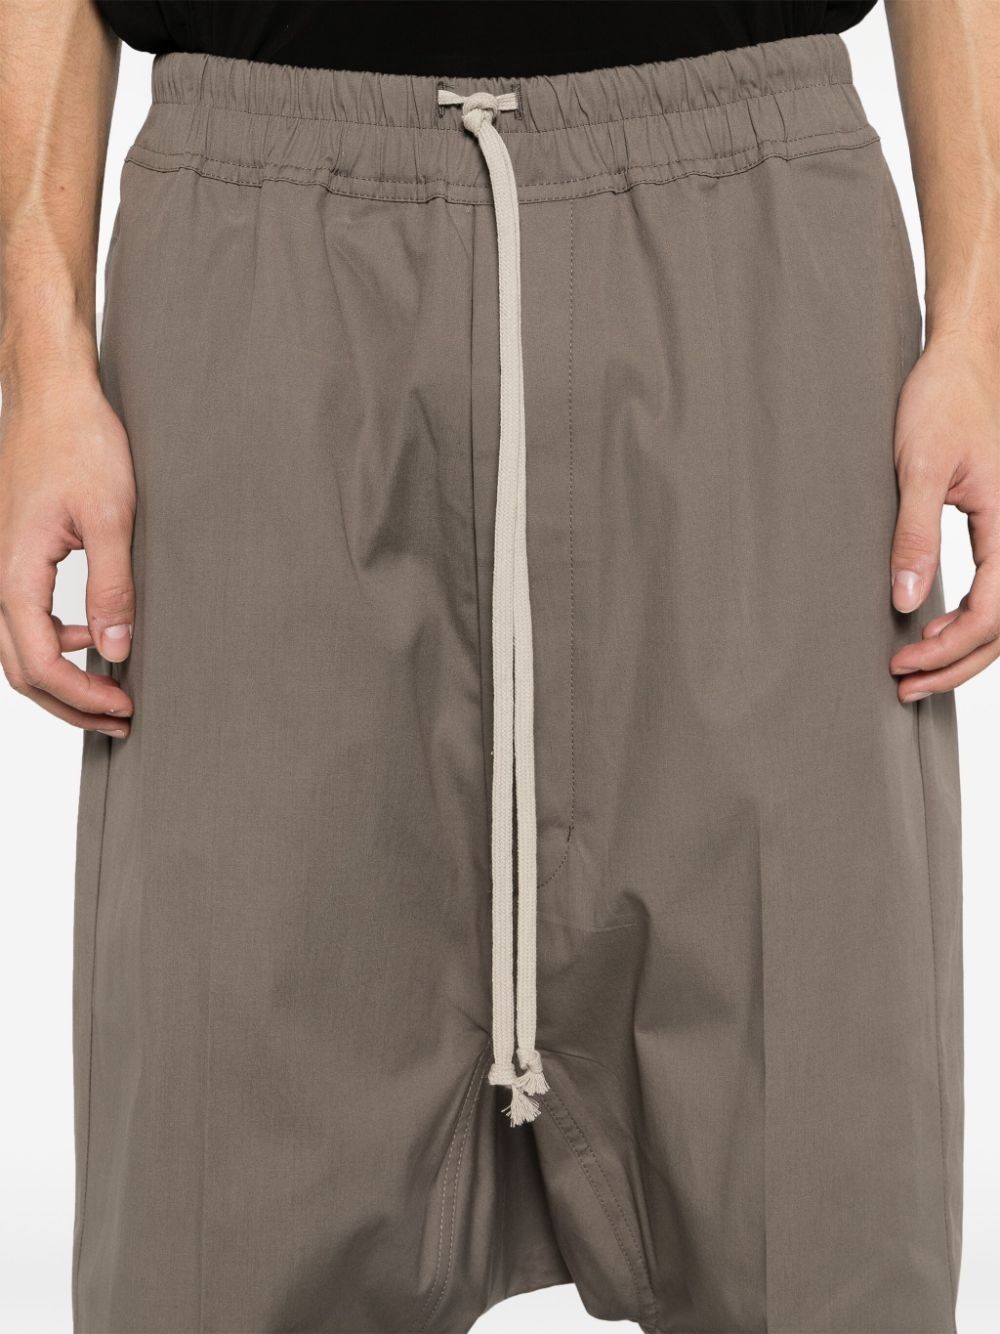 Pods drop-crotch shorts - 5